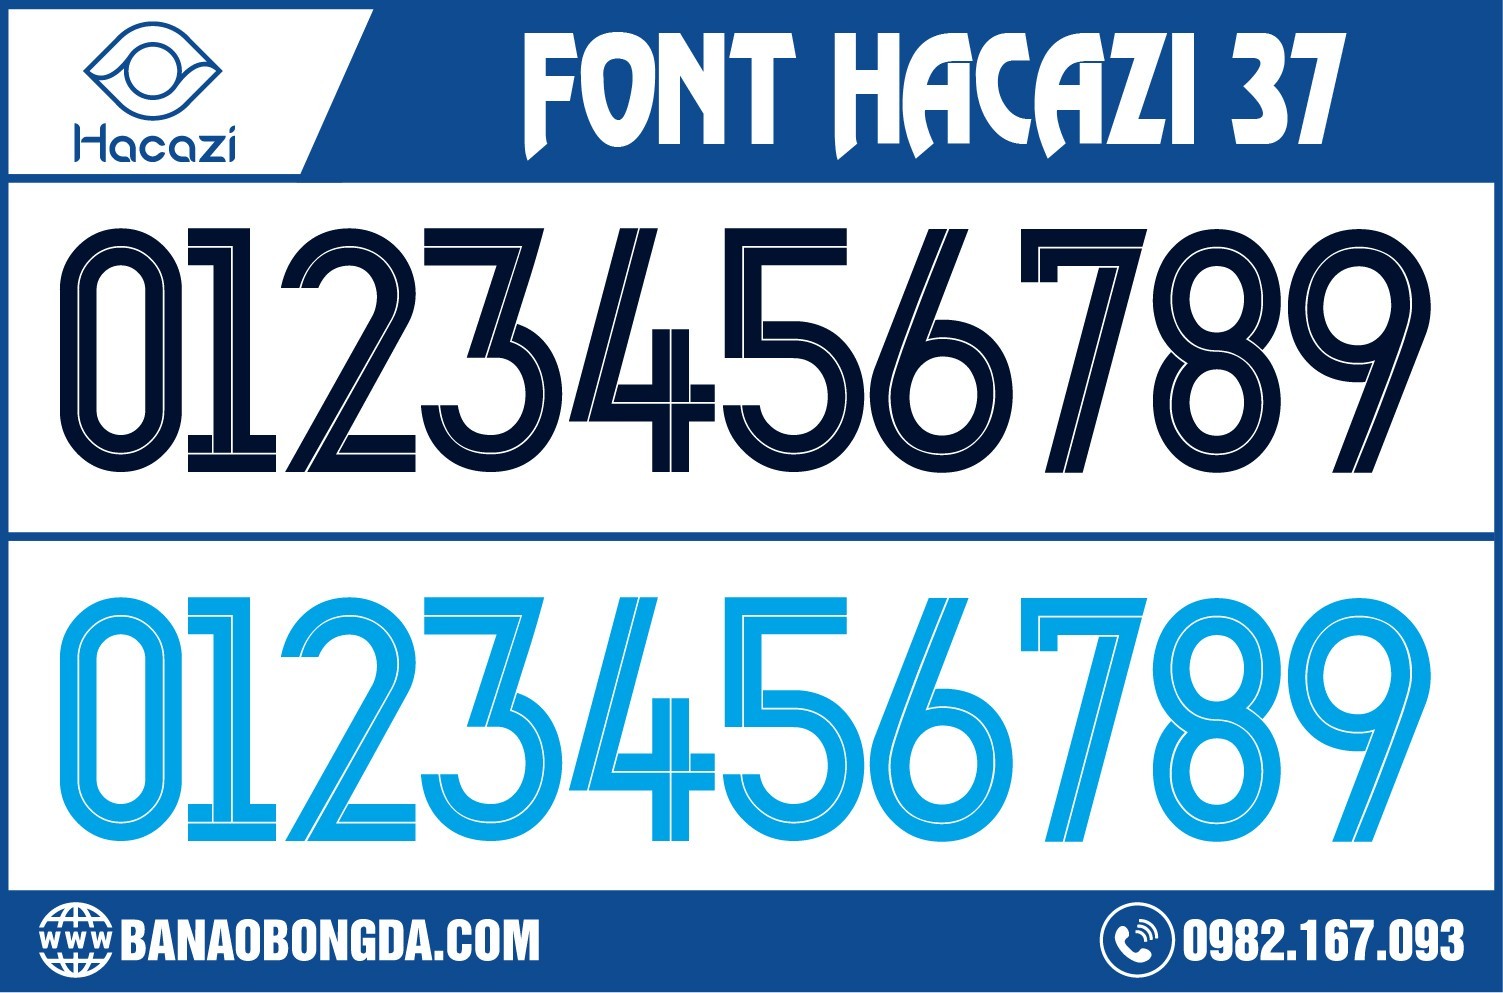 Nếu bạn đã quá chán với những mẫu font đơn điệu thì hãy làm mới ngay cho mẫu áo bóng đá của mình bằng phiên bản độc quyền của Shop Mata Sport mang tên Font số áo bóng đá 37 đặc biệt - Hacazi Sport mới nhất hiện nay nhé. 